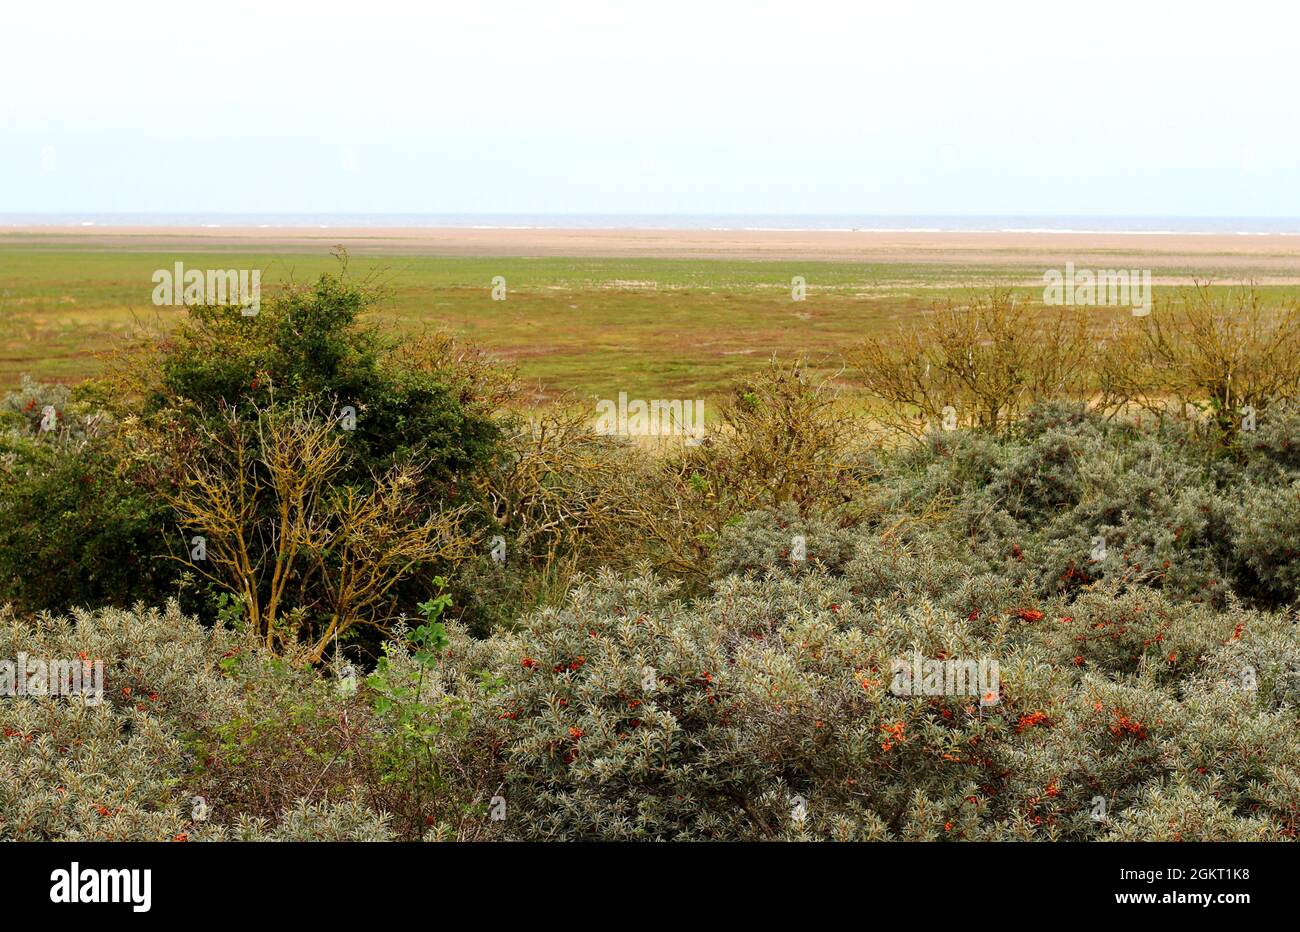 Donna Nook sulla costa del Lincolnshire. Le saline, le mudflats, le salse e le dune della zona lo rendono un paradiso per l'avifauna e le foche grigie. Foto Stock